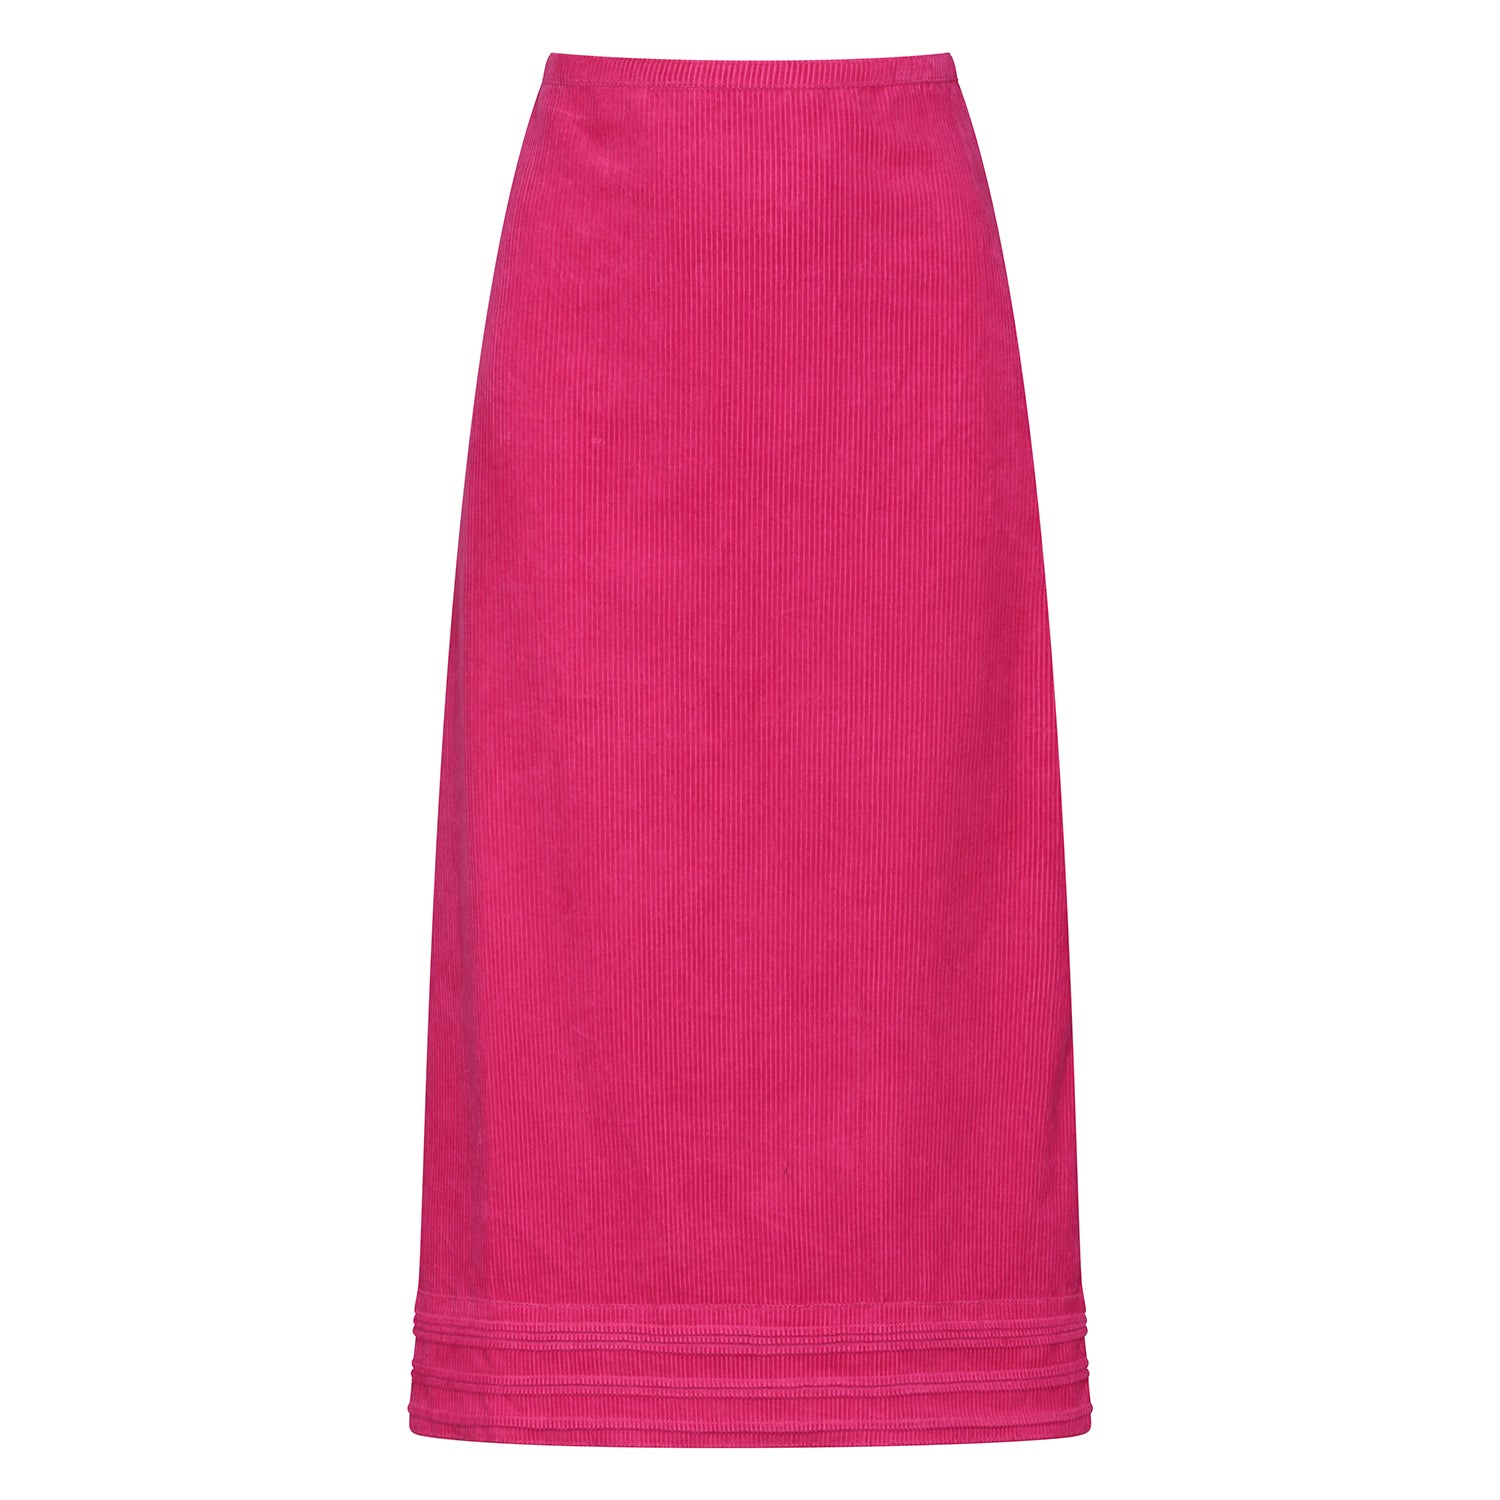 Simple Skirt - Peony Pink